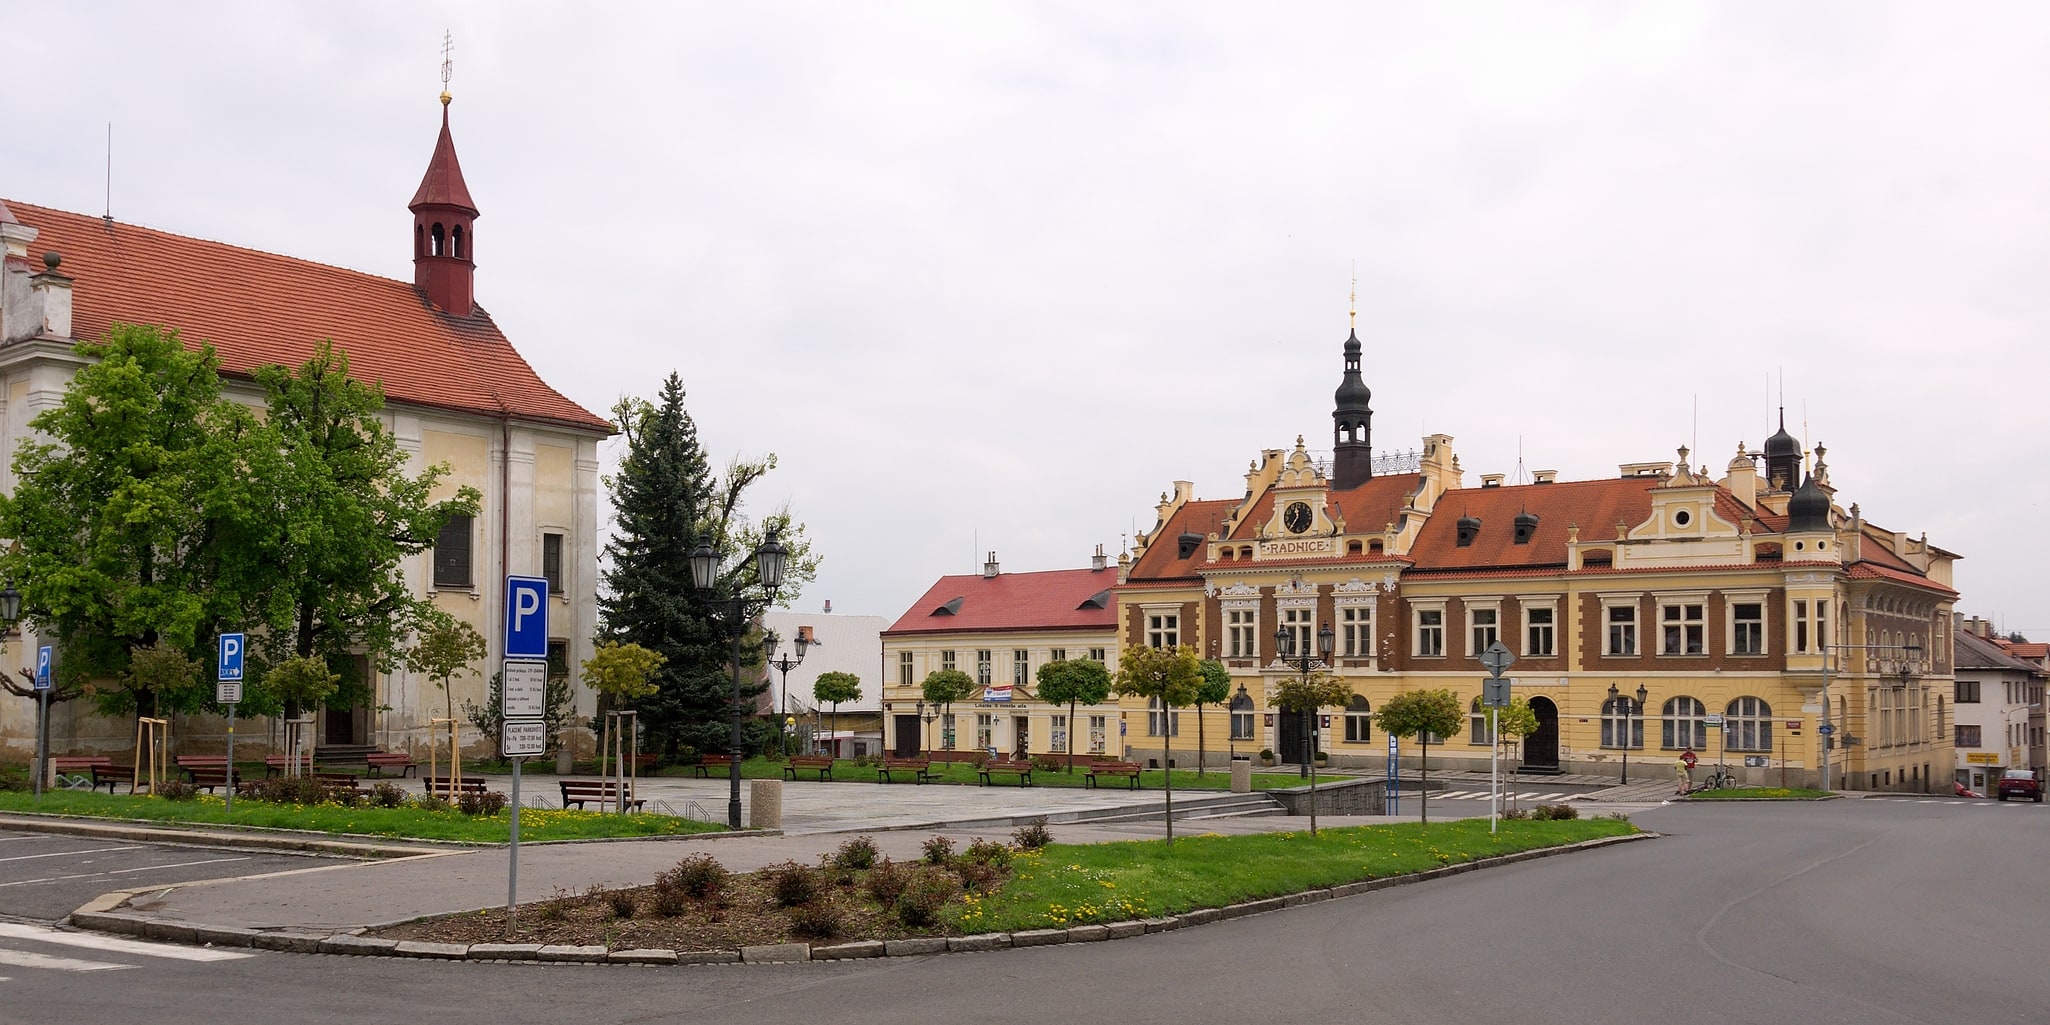 Hořovice, República Checa